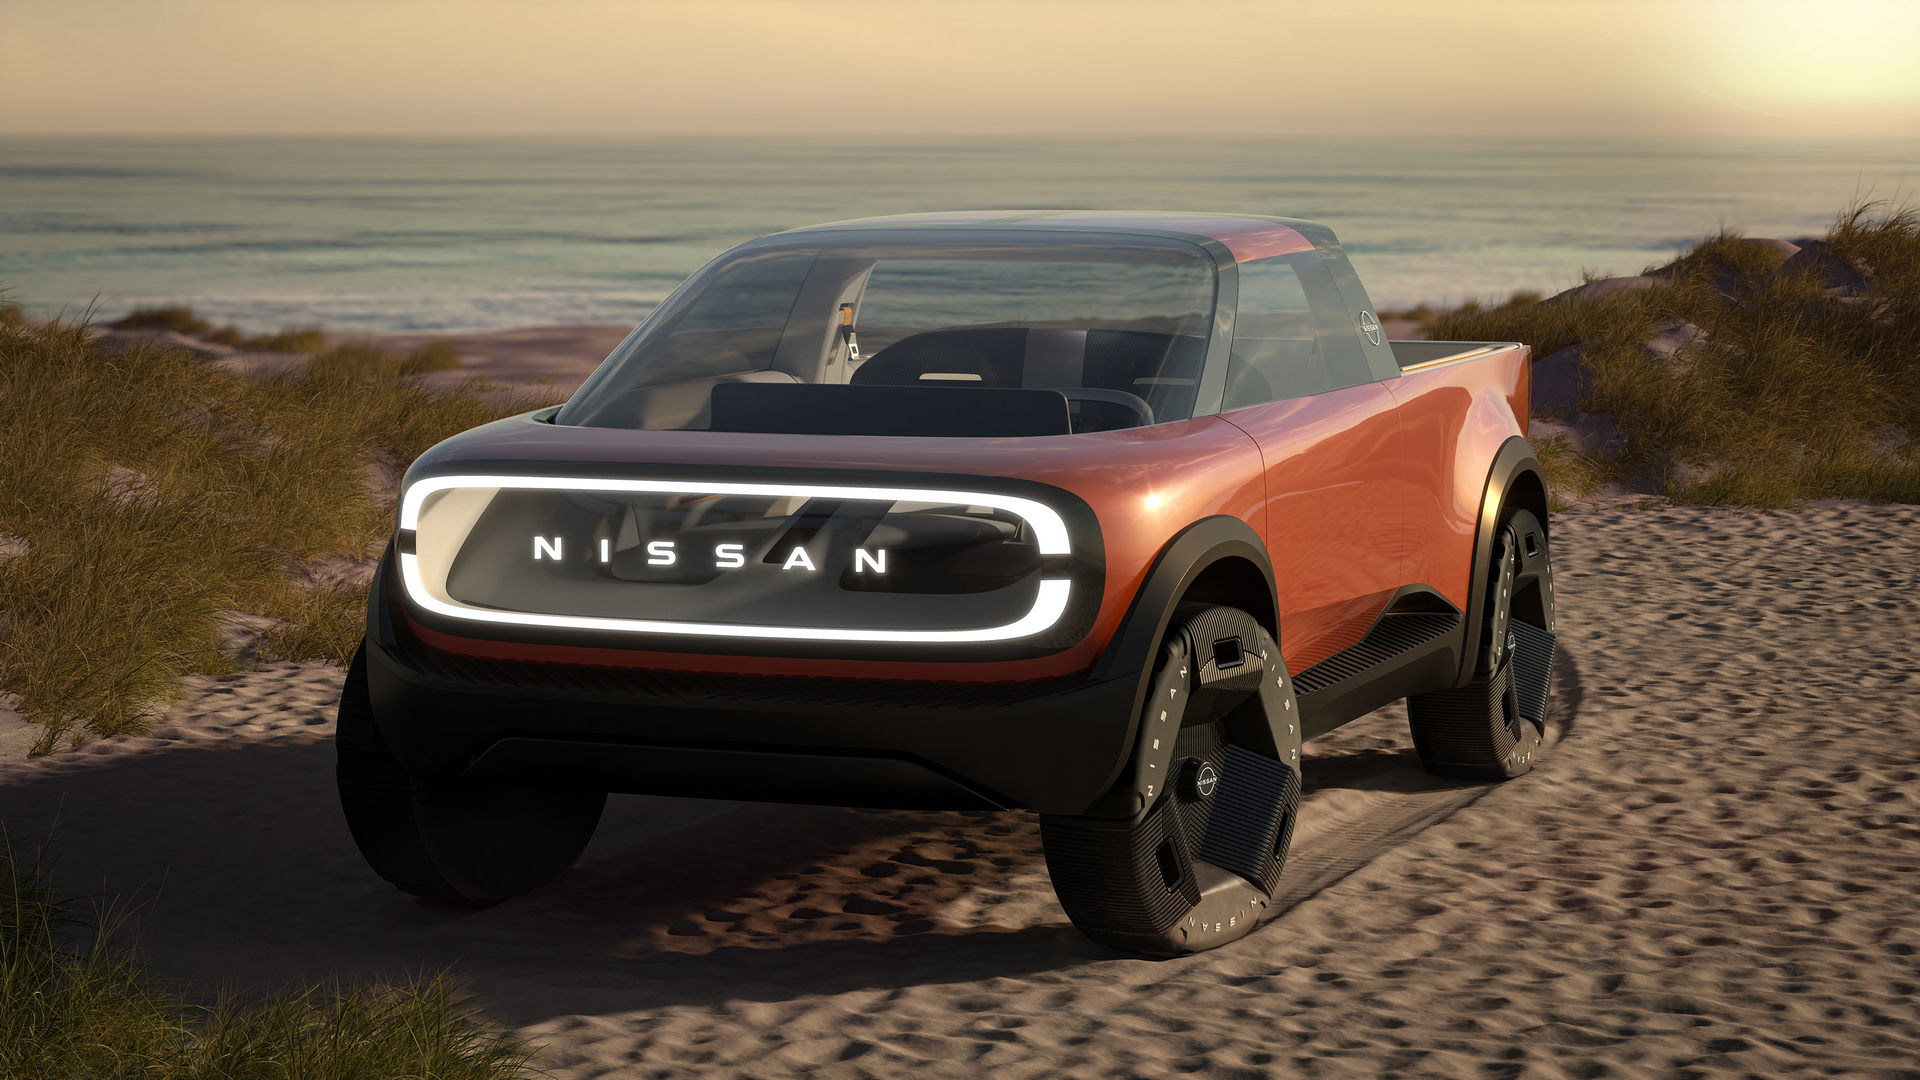 Nissan giới thiệu 4 mẫu concept xe điện cực ấn tượng nissan-surf-out-concept.jpg